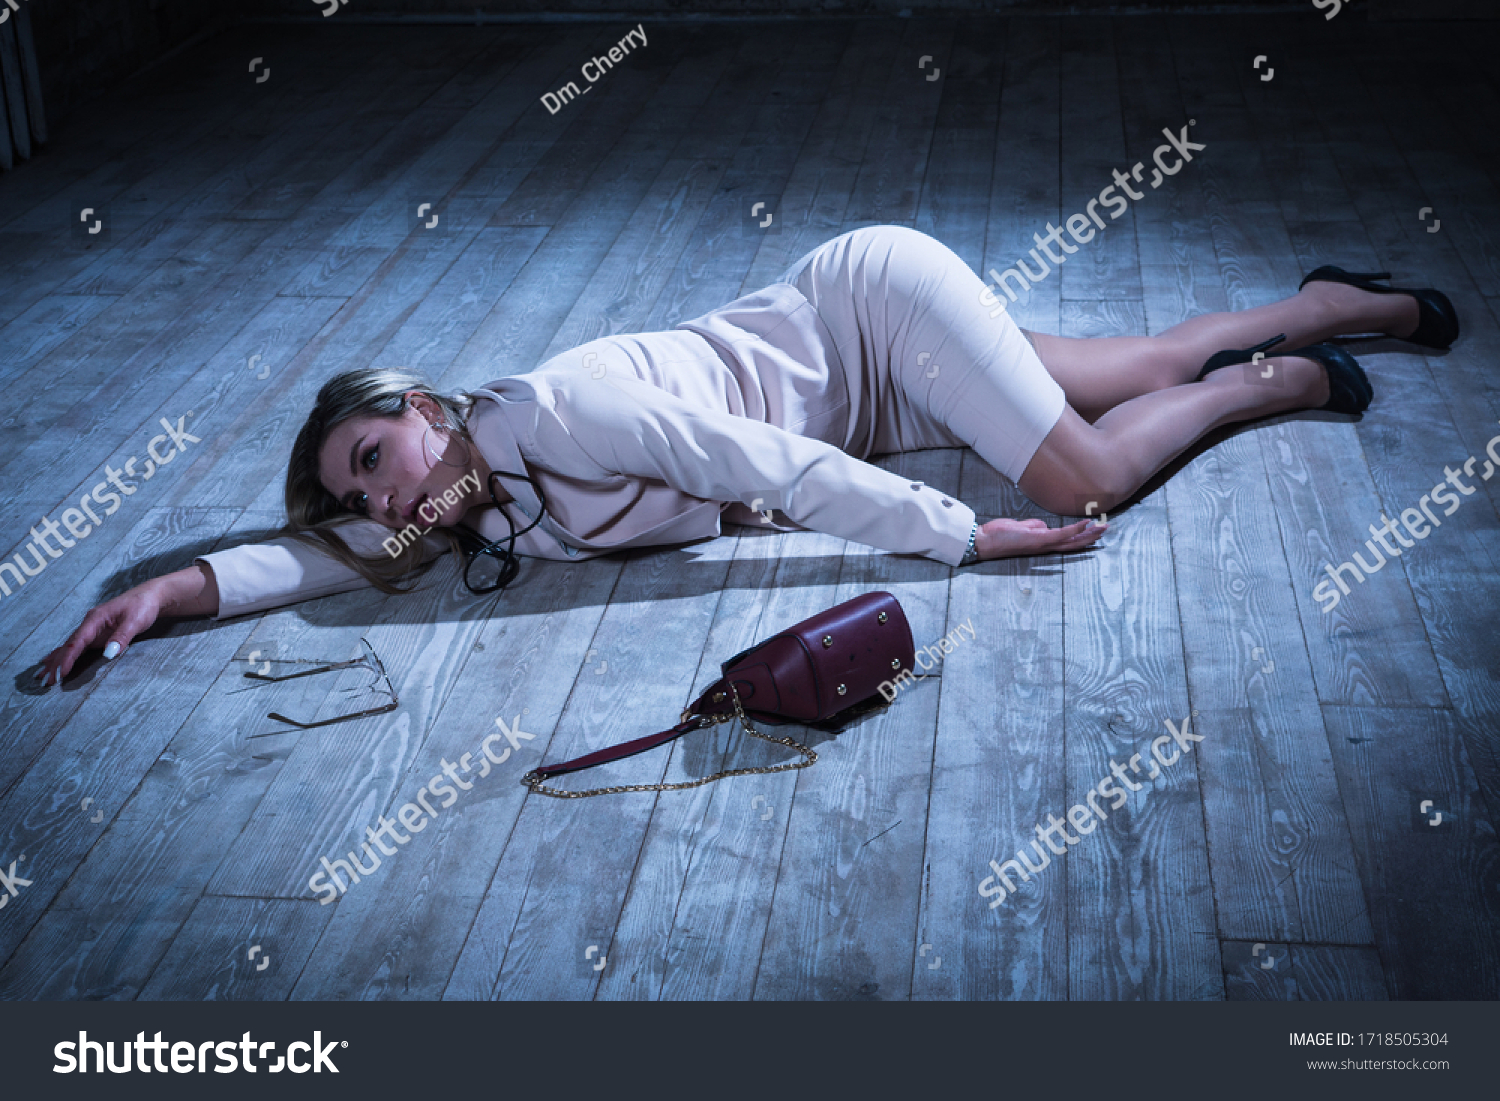 Crime Scene Strangled Pretty Business Woman库存照片1718505304 Shutterstock 0916